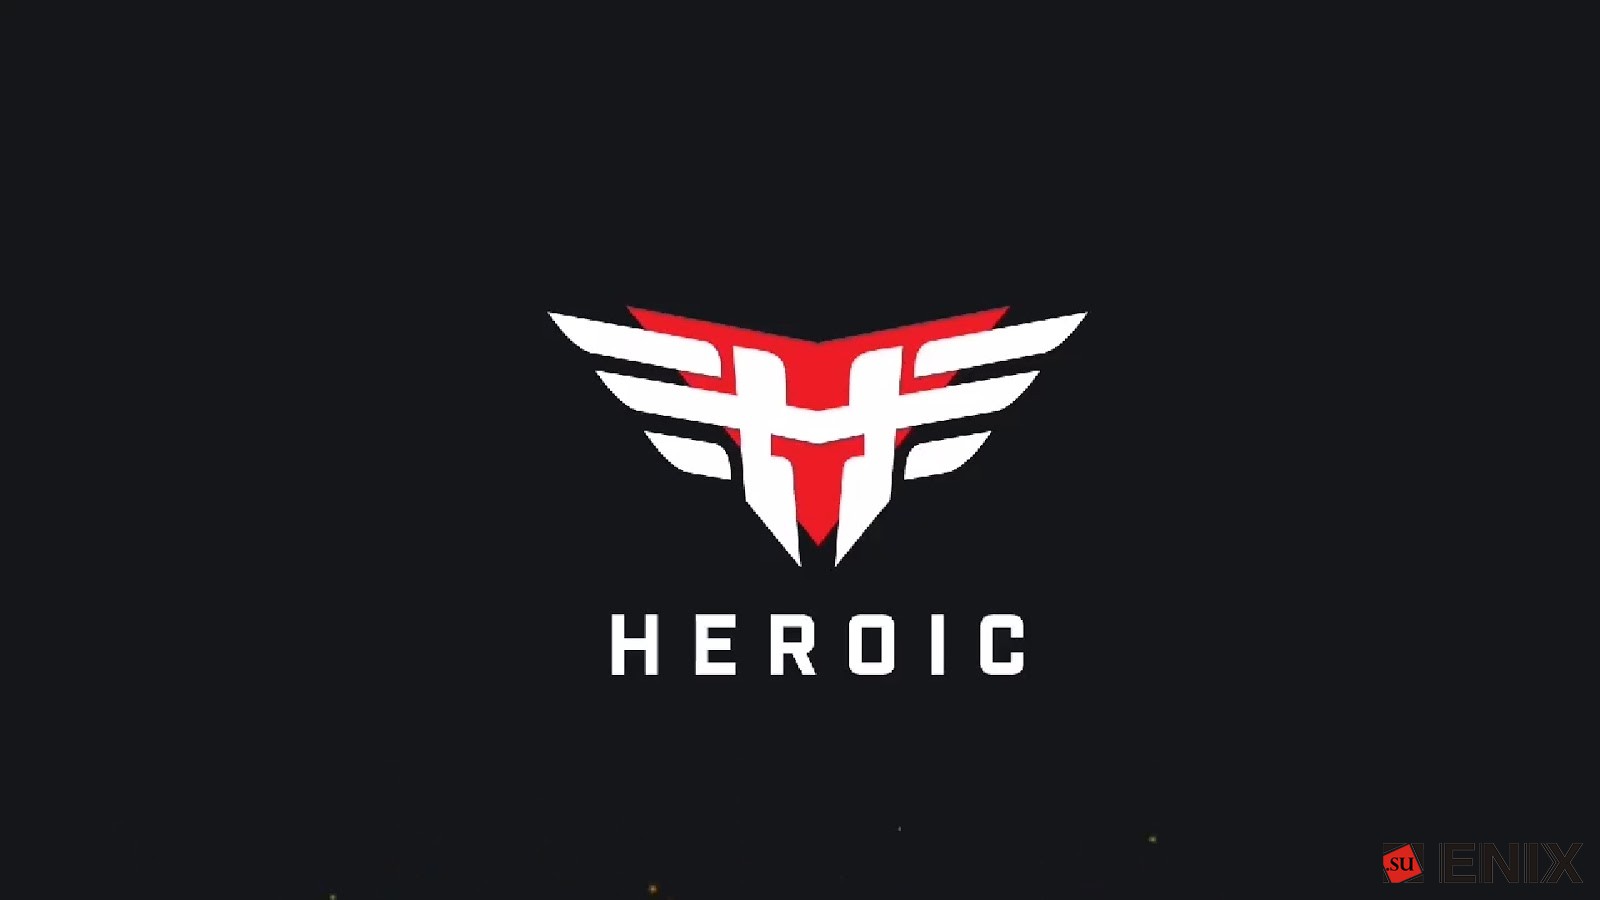 Heroic вернулась в топ-10 мирового рейтинга команд по версии HLTV